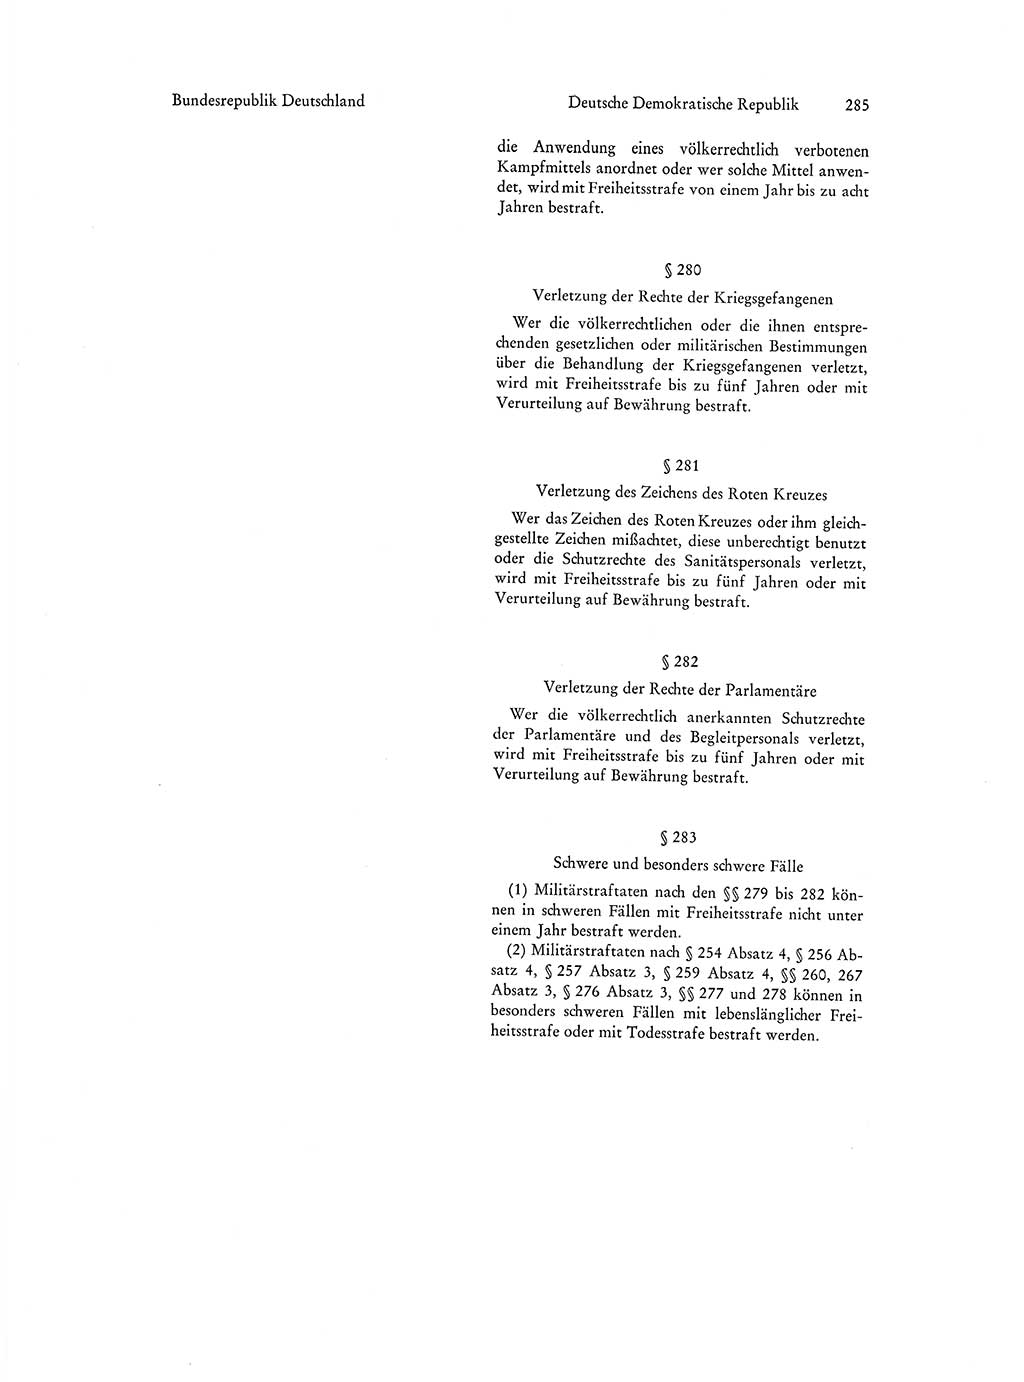 Strafgesetzgebung in Deutschland [Bundesrepublik Deutschland (BRD) und Deutsche Demokratische Republik (DDR)] 1972, Seite 285 (Str.-Ges. Dtl. StGB BRD DDR 1972, S. 285)